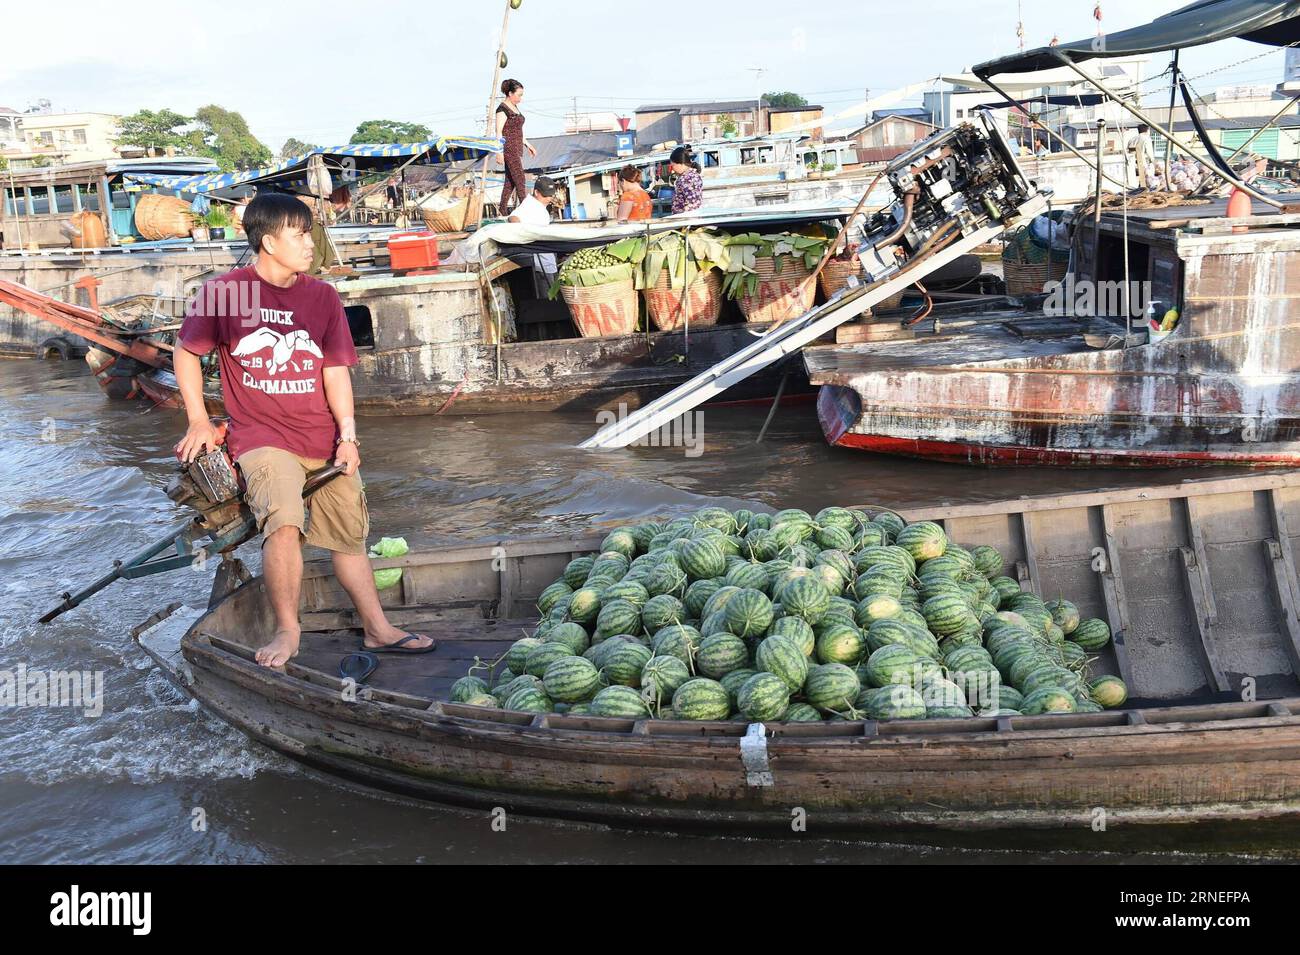 (160621) -- CAN THO, 21 juin 2016 -- Un vendeur vietnamien vend des pastèques dans le plus grand marché flottant de CAN Tho, Cai rang, Vietnam, 21 juin 2016. CAN Tho, à environ 170 km de Ho Chin Minh-ville dans le delta du Mékong, est célèbre pour ses marchés flottants où les gens peuvent acheter des fruits, des produits agricoles et des collations.) VIETNAM-CAN THO-MARCHÉ FLOTTANT LexYanna PUBLICATIONxNOTxINxCHN 160621 CAN Tho juin 21 2016 un vendeur vietnamien vend des pastèques à CAN Tho S le plus grand marché flottant Cai Rank Vietnam juin 21 2016 CAN Tho environ 170 km de Ho Chin Minh ville dans le delta du Mékong EST célèbre pour son F. Banque D'Images